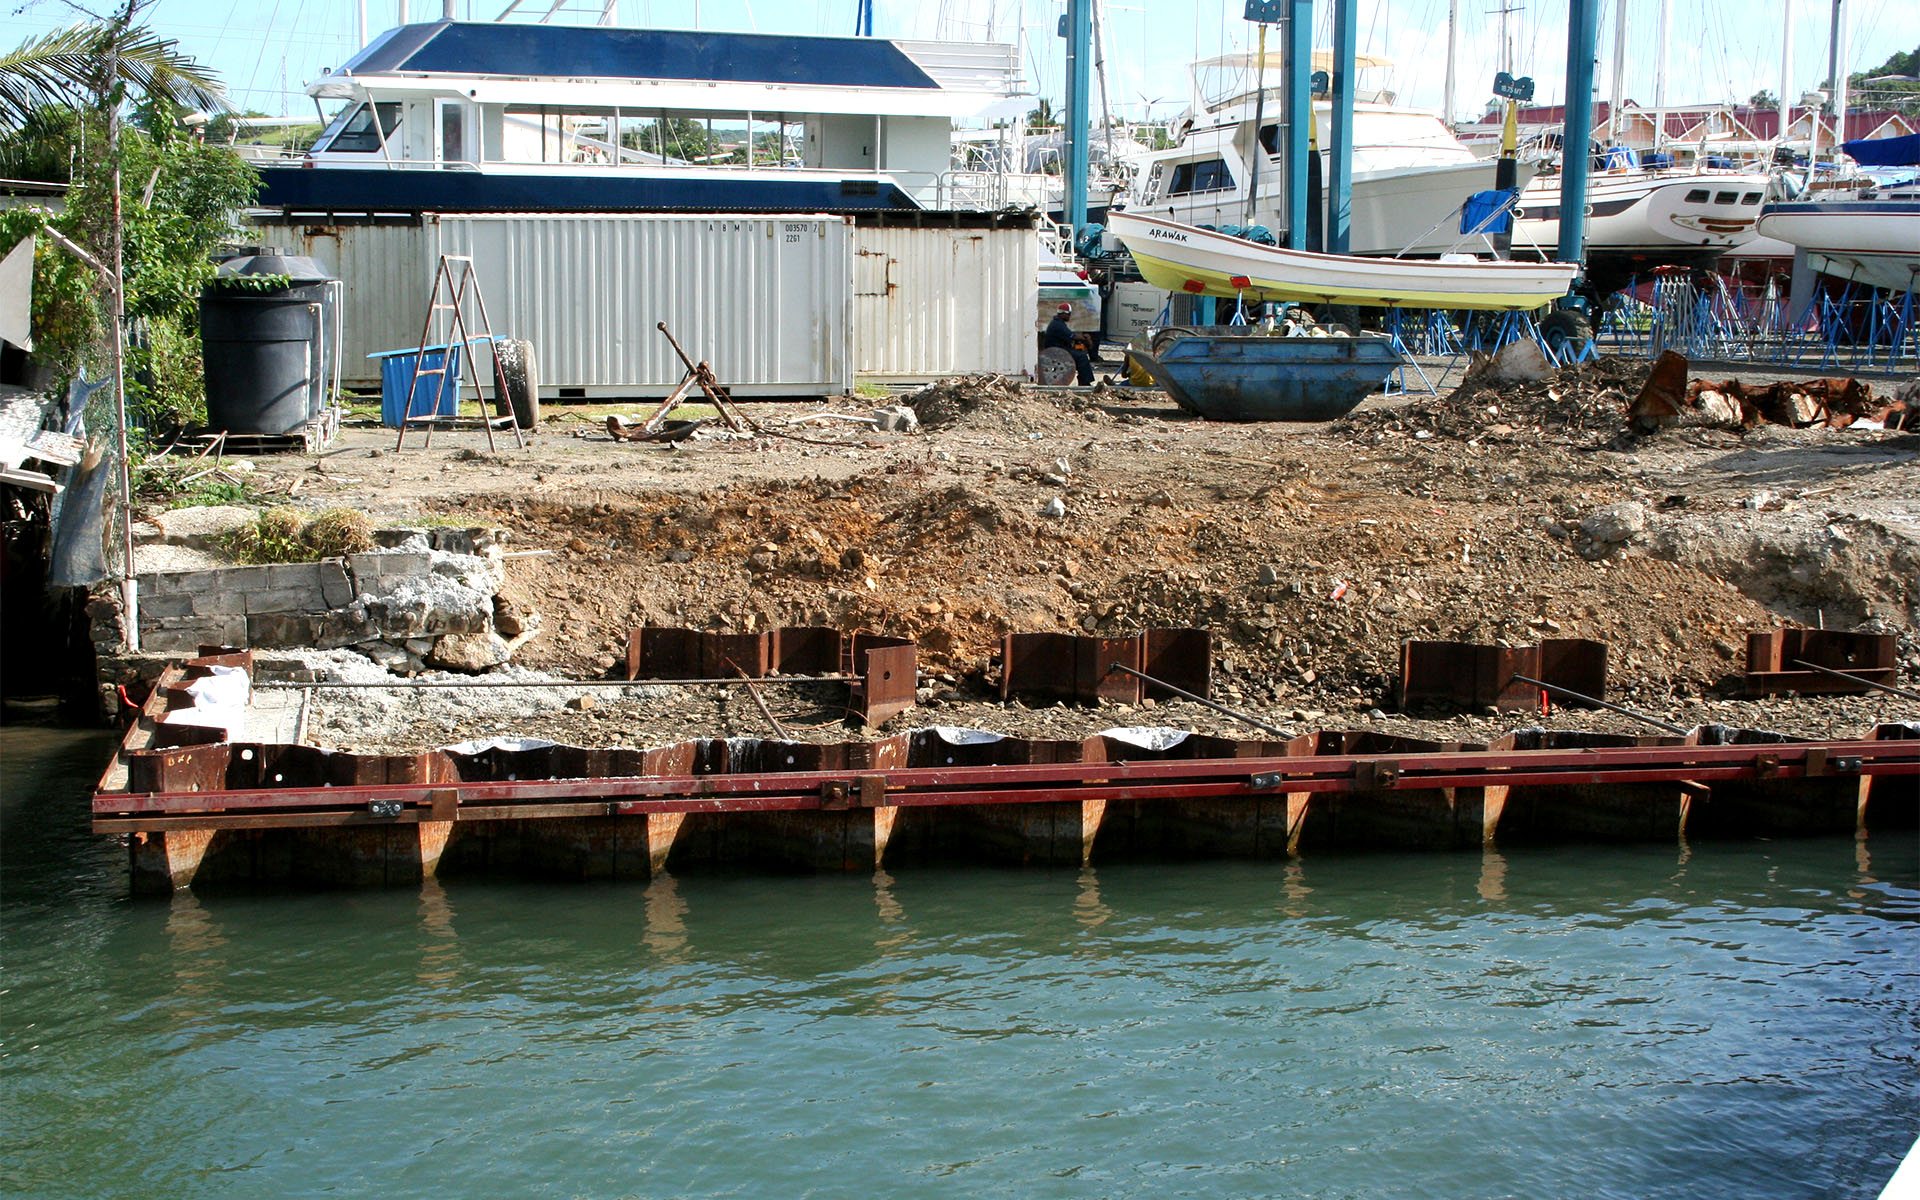 IGY Rodney Marina - sheet piled bulkhead seawall